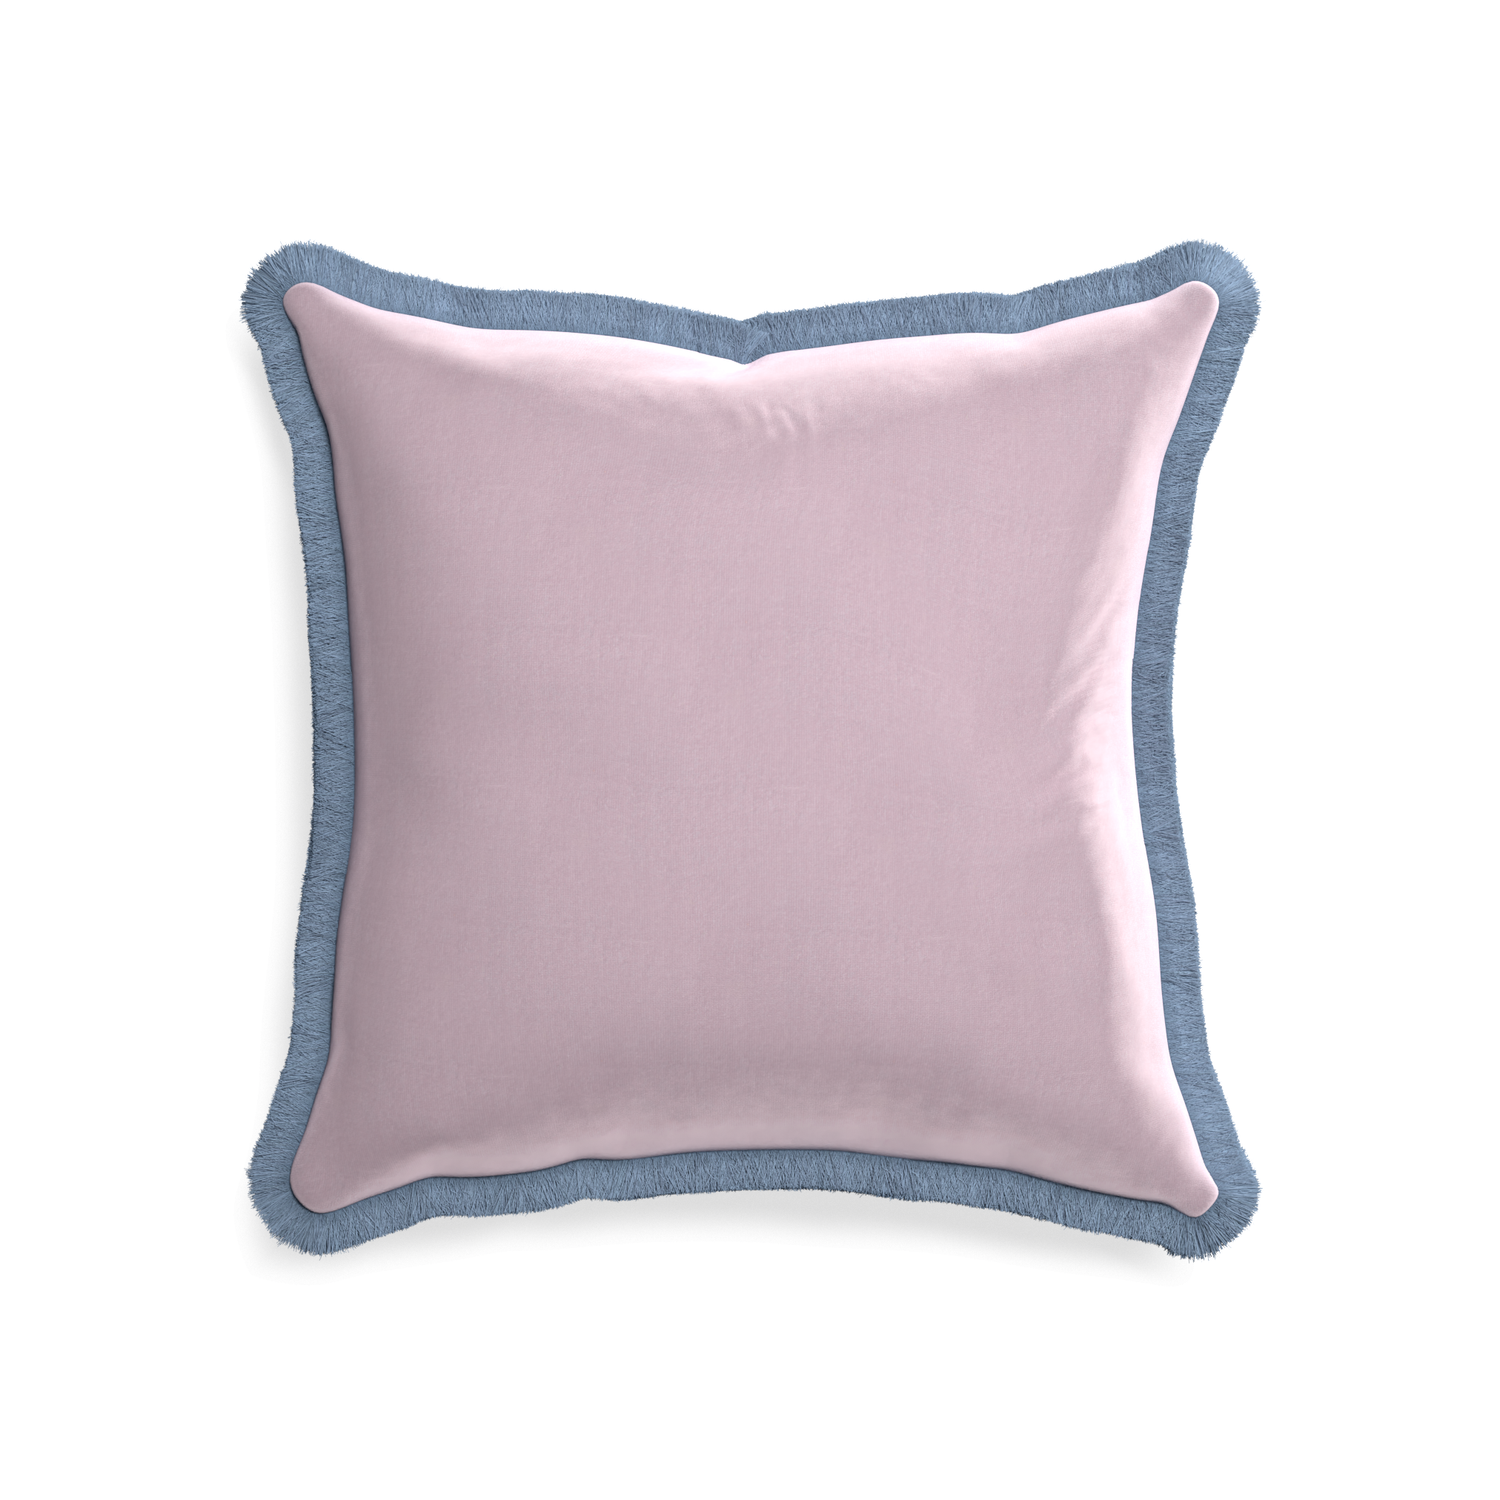 20-square lilac velvet custom pillow with sky fringe on white background